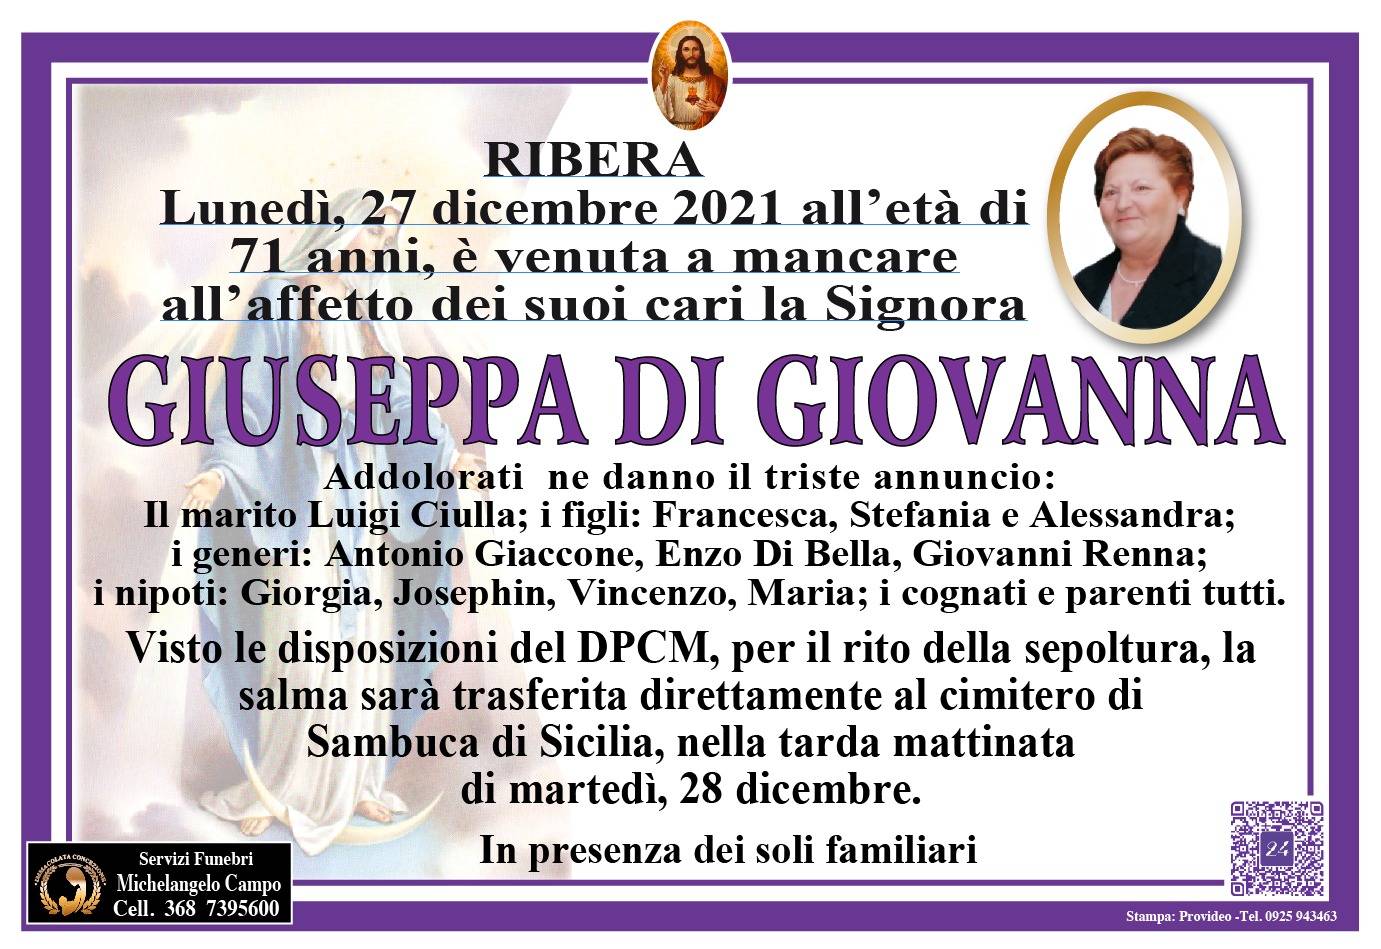 Giuseppa Di Giovanna